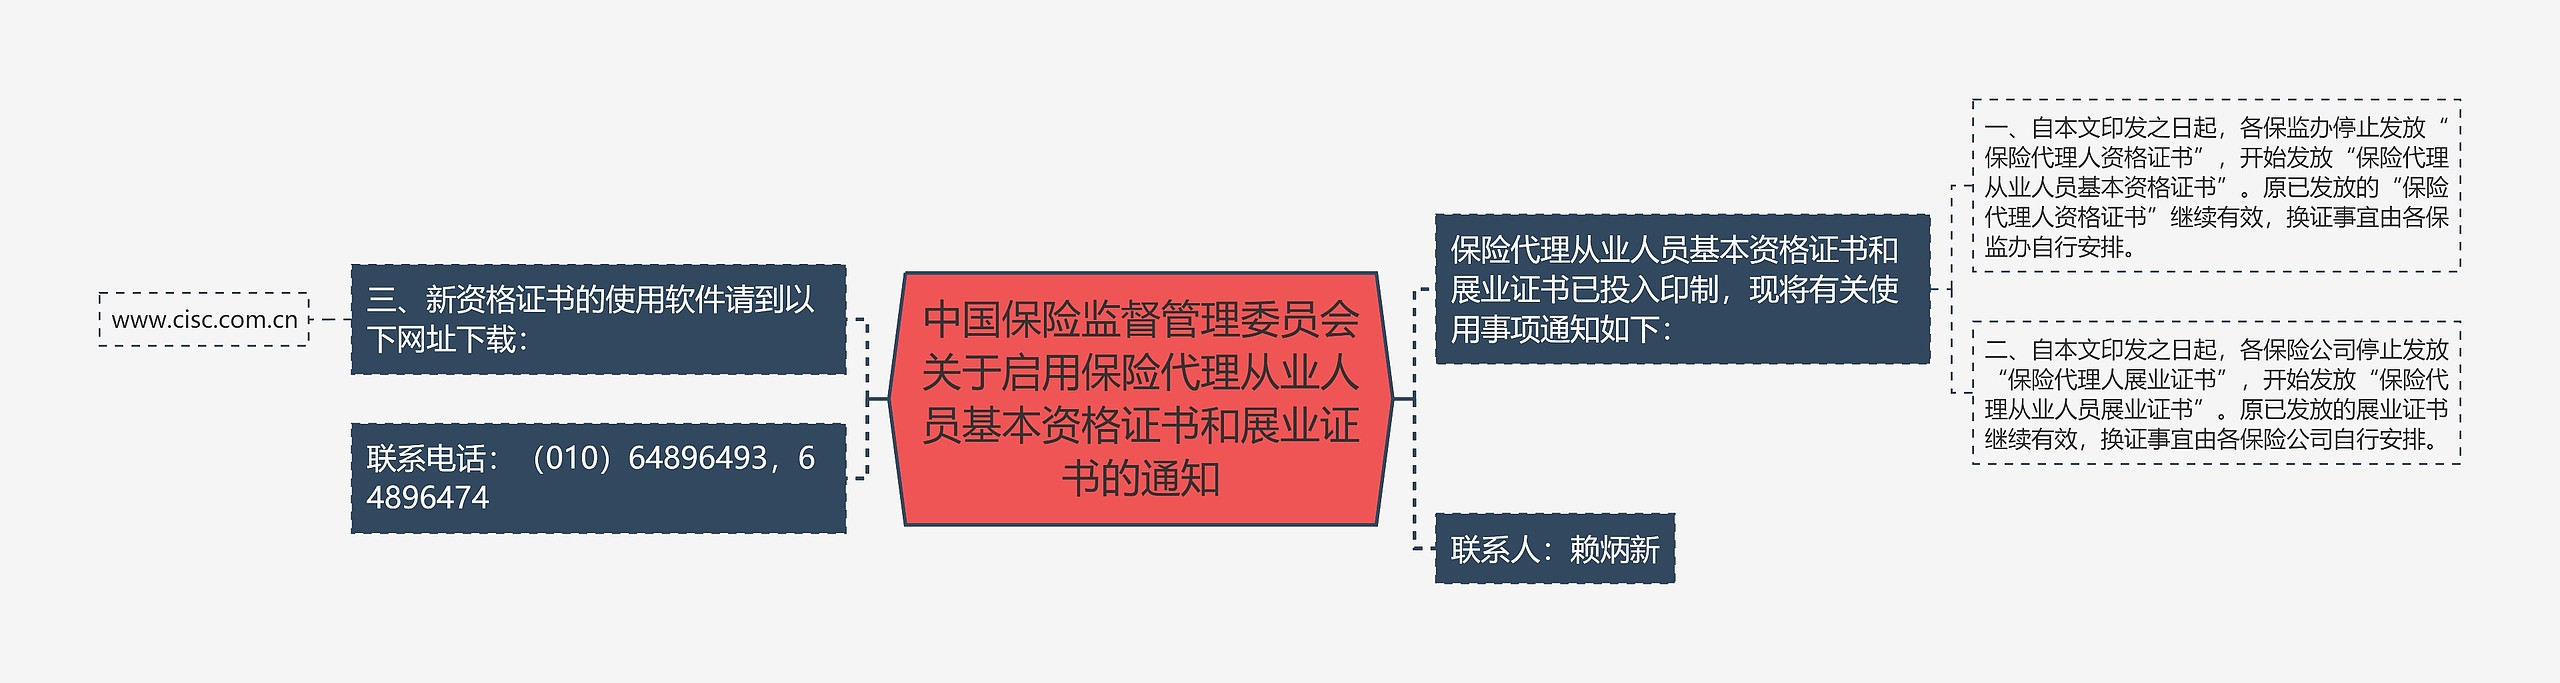 中国保险监督管理委员会关于启用保险代理从业人员基本资格证书和展业证书的通知思维导图